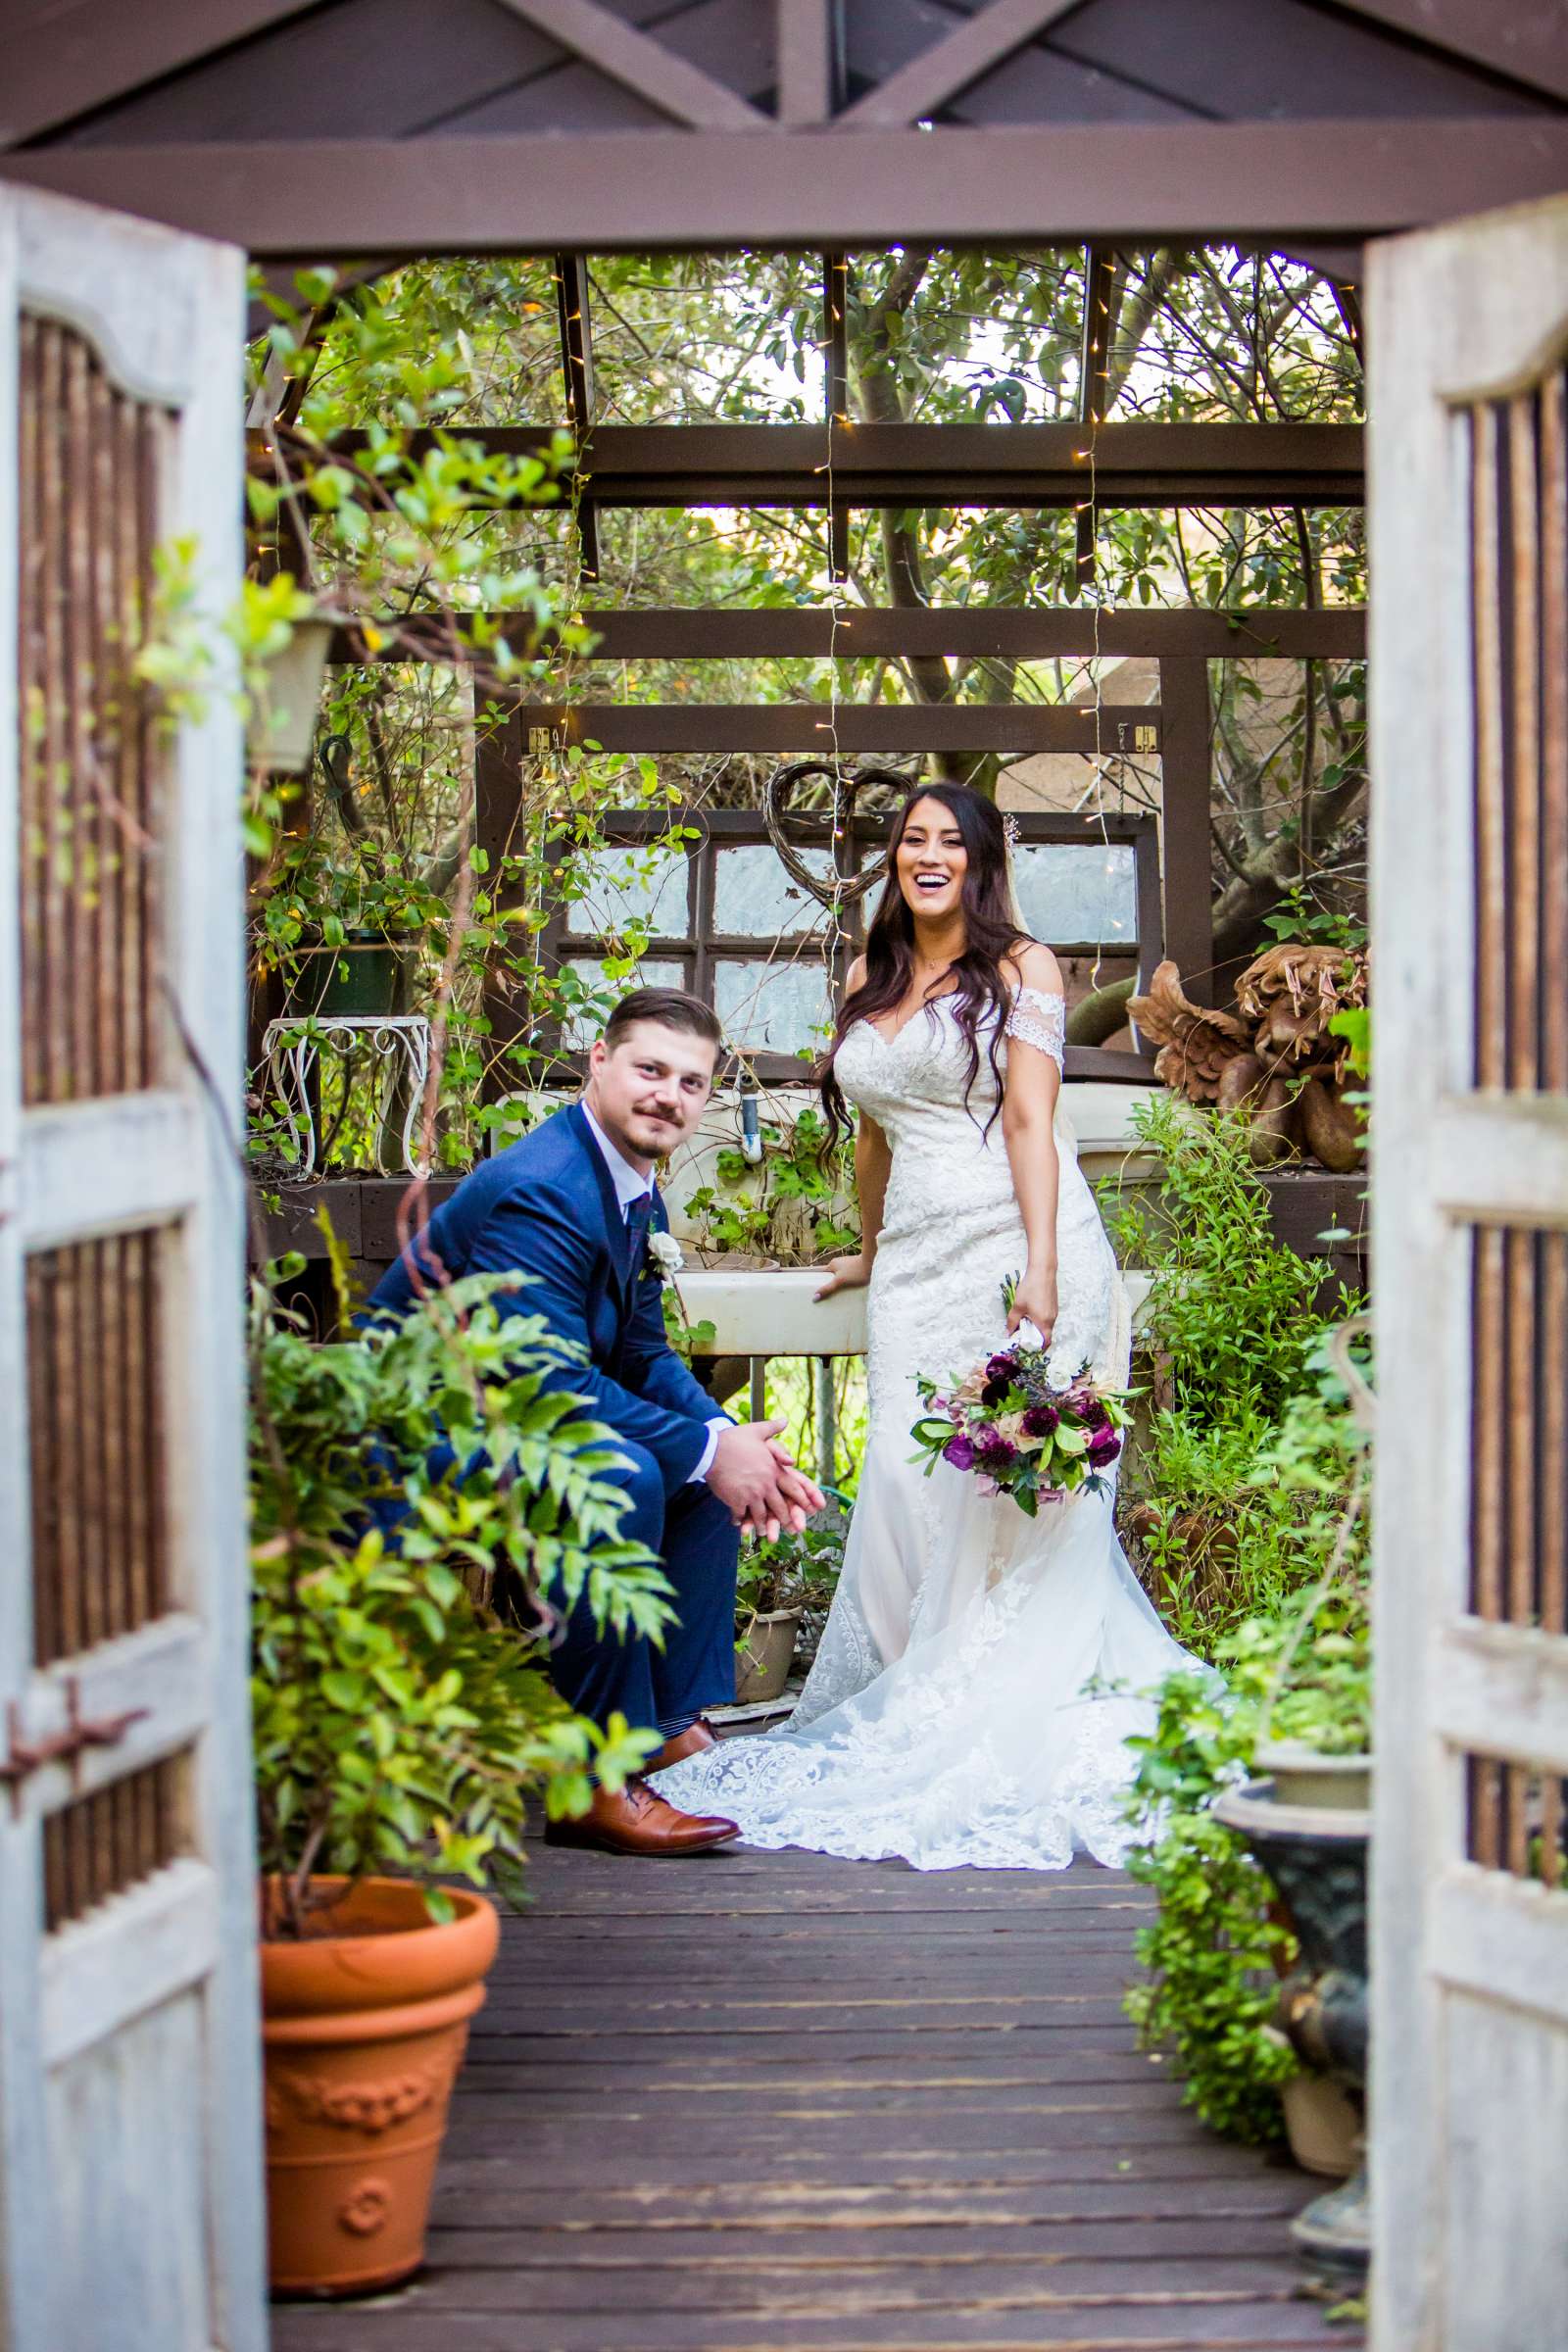 Twin Oaks House & Gardens Wedding Estate Wedding, Stephanie and Ilija Wedding Photo #110 by True Photography